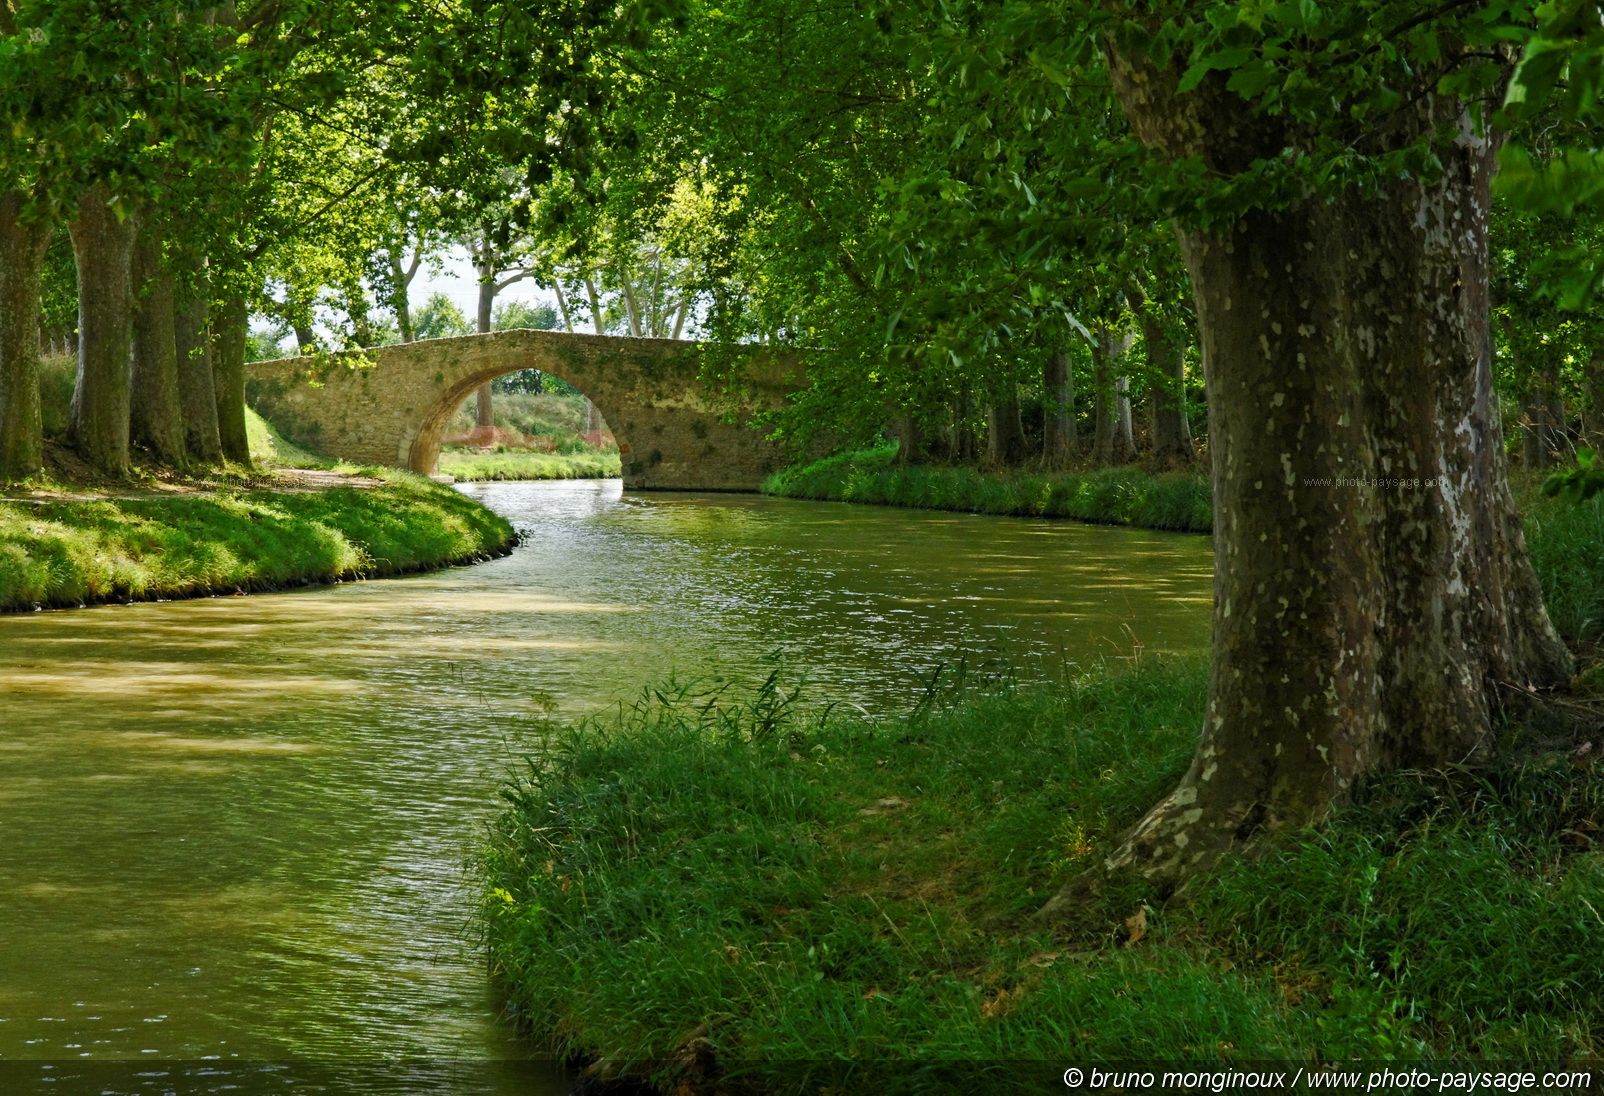 Le canal du Midi est inscrit sur la liste du patrimoine de l'humanité de l'Unesco depuis 1996. Sur les plus de 40 milliers de platanes qui arborent le linéaire, près de 10.000 sont malades et doivent être abattus. © Bruno Monginoux, Landschaft-Foto.com, cc by nc nd